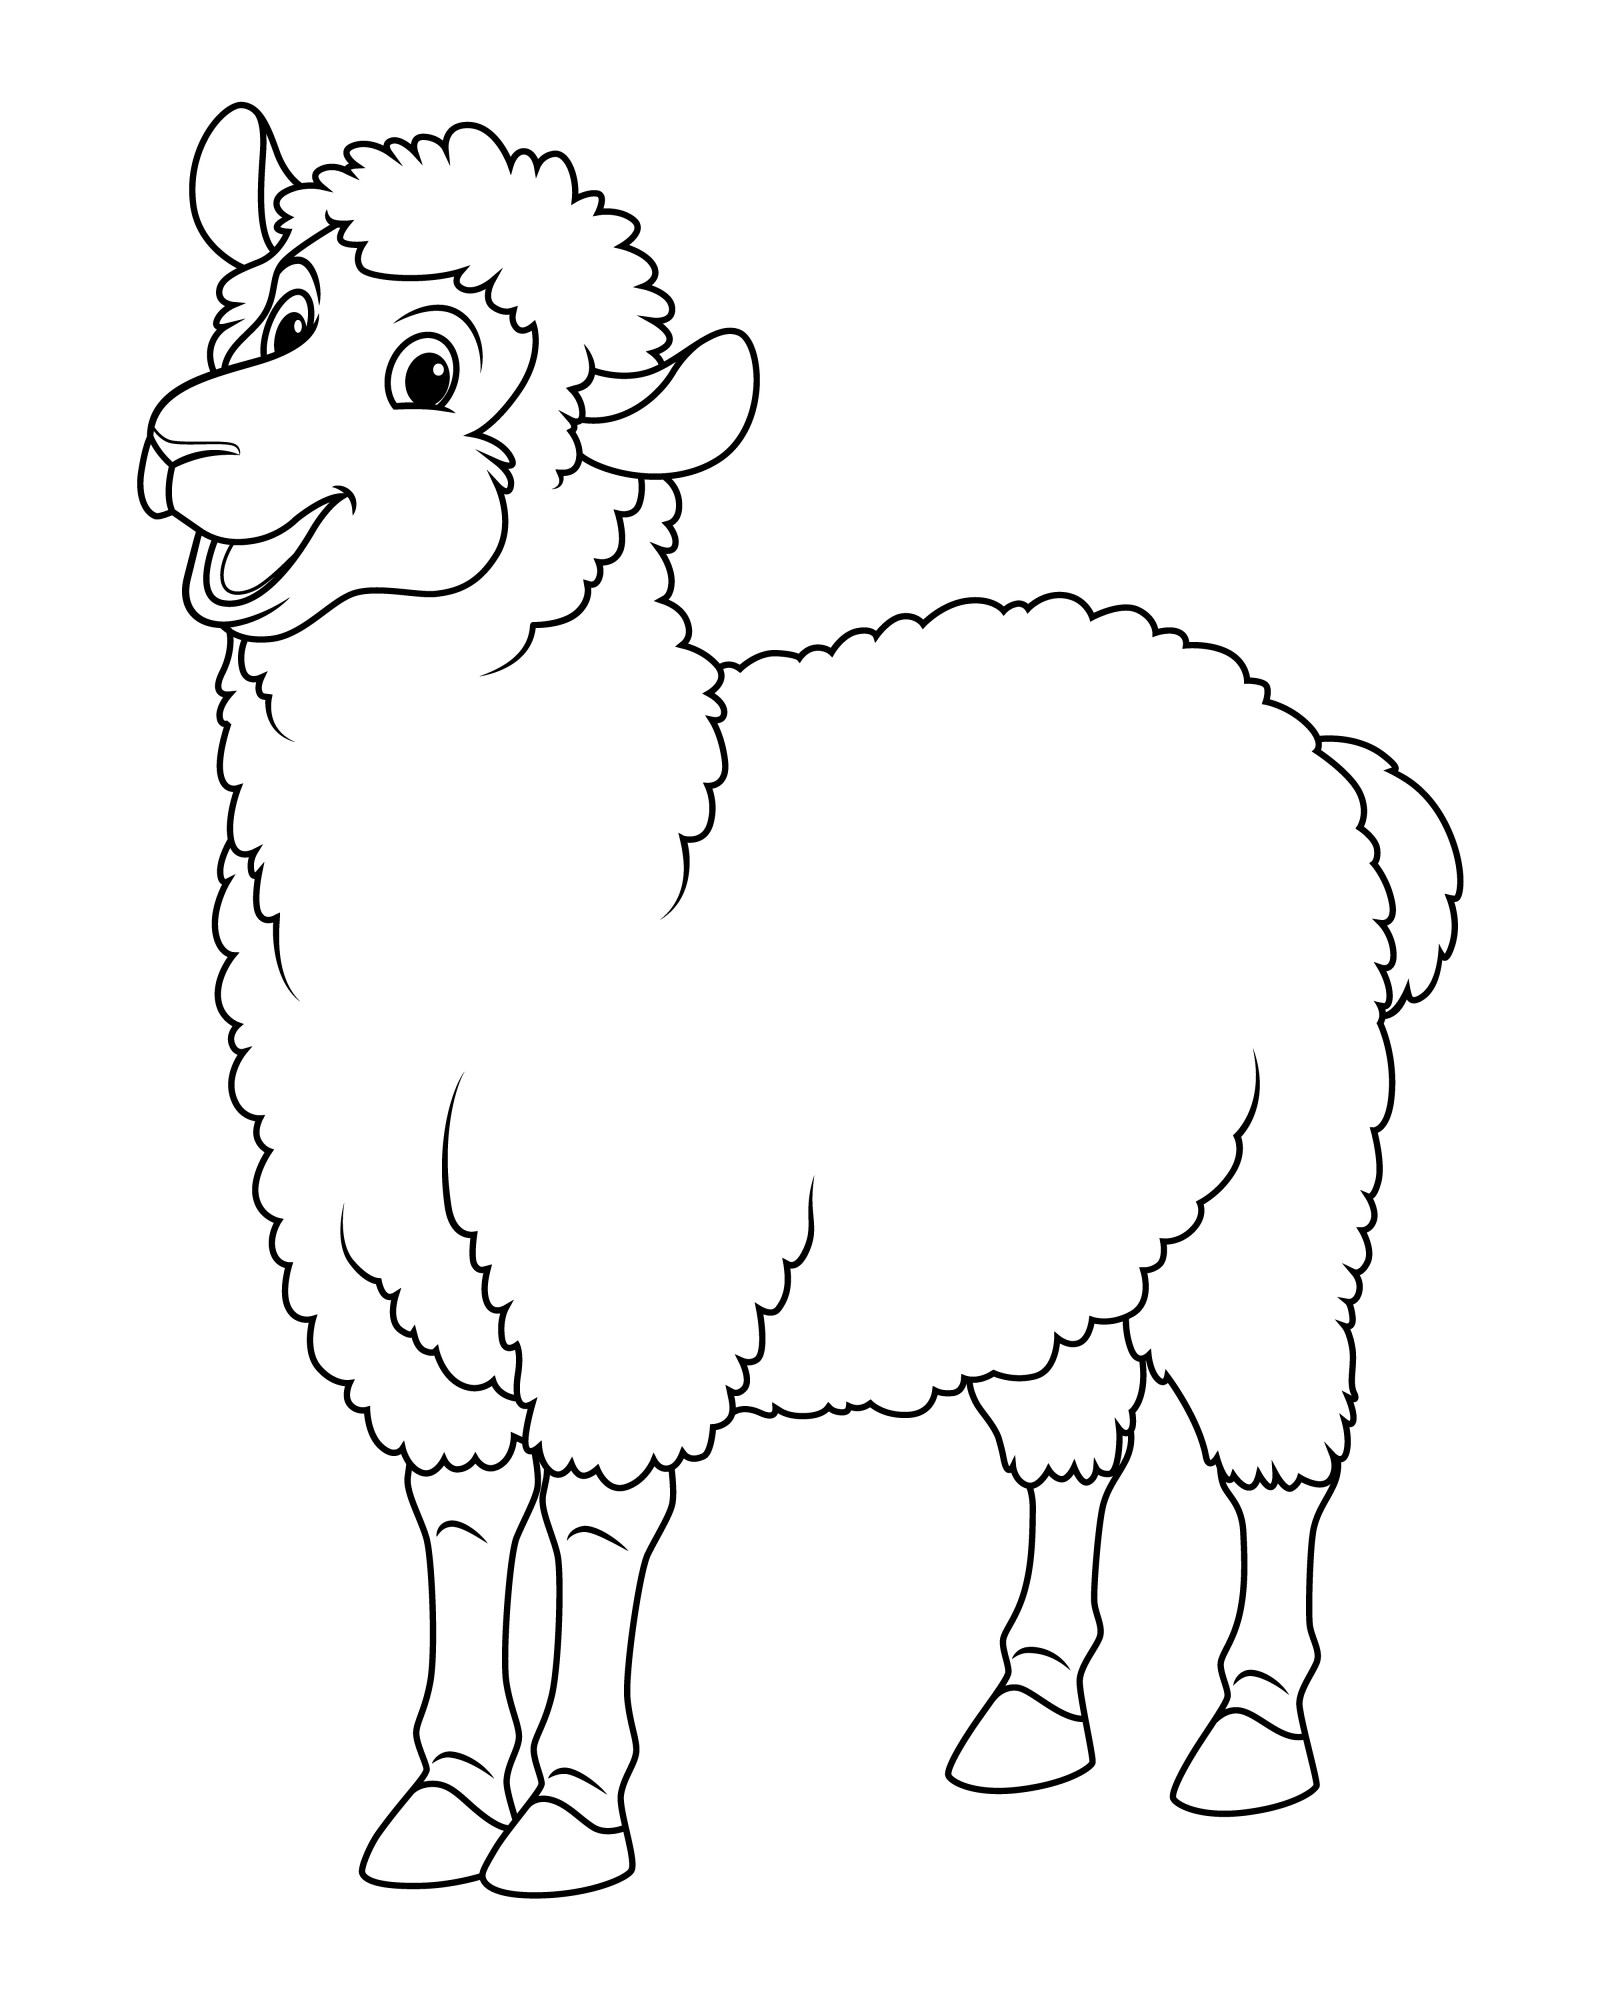 Раскраска для детей: задорная овца улыбается